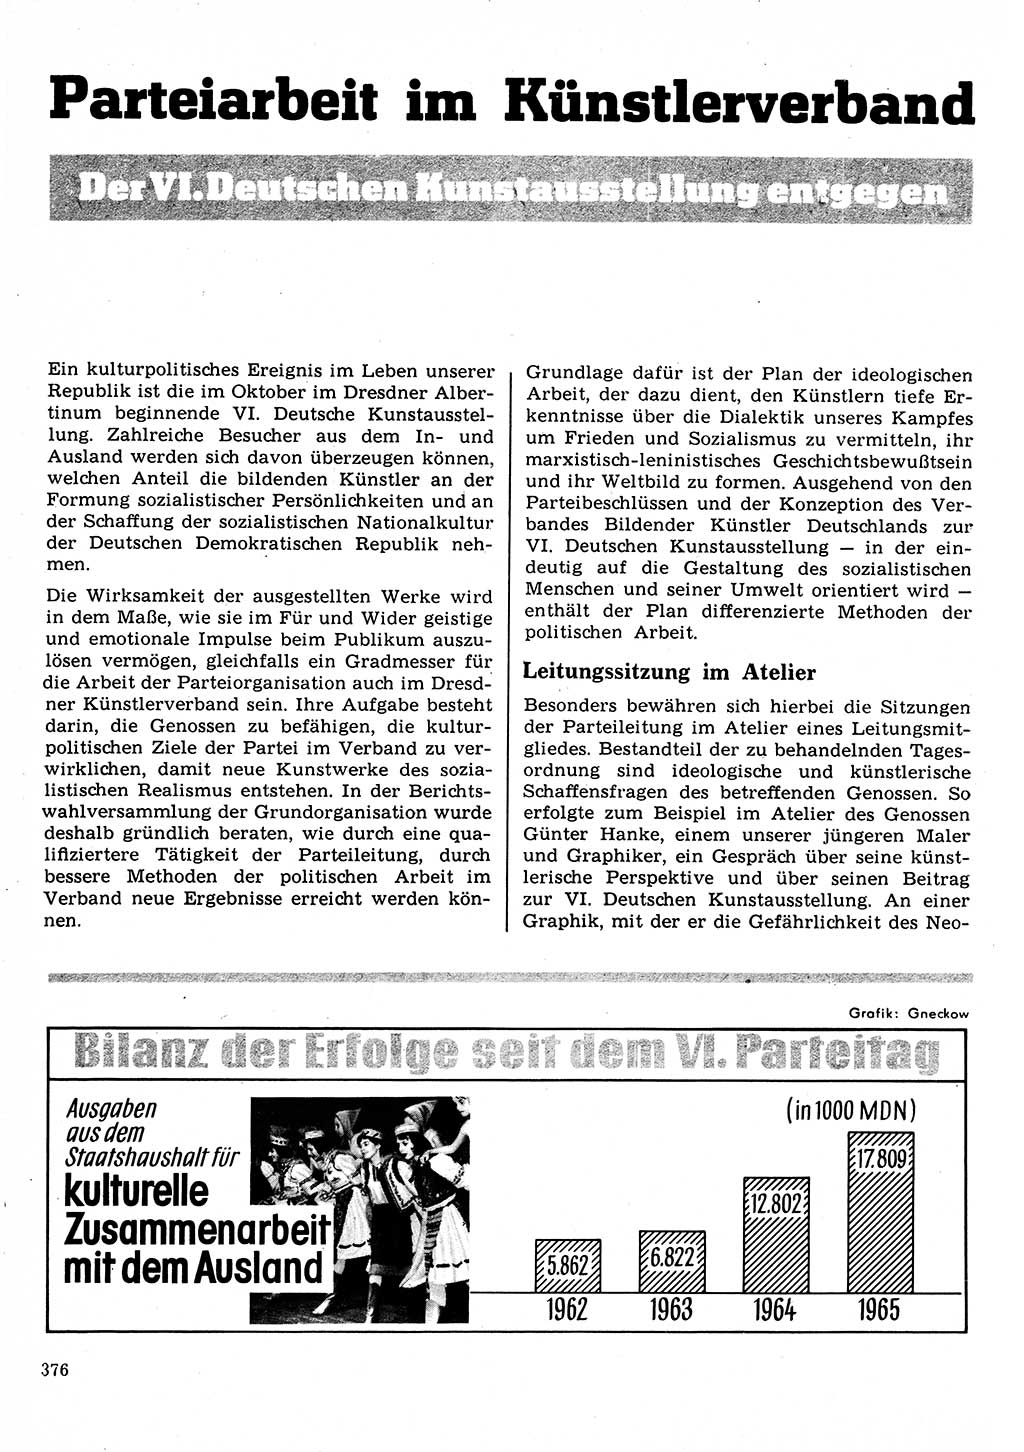 Neuer Weg (NW), Organ des Zentralkomitees (ZK) der SED (Sozialistische Einheitspartei Deutschlands) für Fragen des Parteilebens, 22. Jahrgang [Deutsche Demokratische Republik (DDR)] 1967, Seite 376 (NW ZK SED DDR 1967, S. 376)